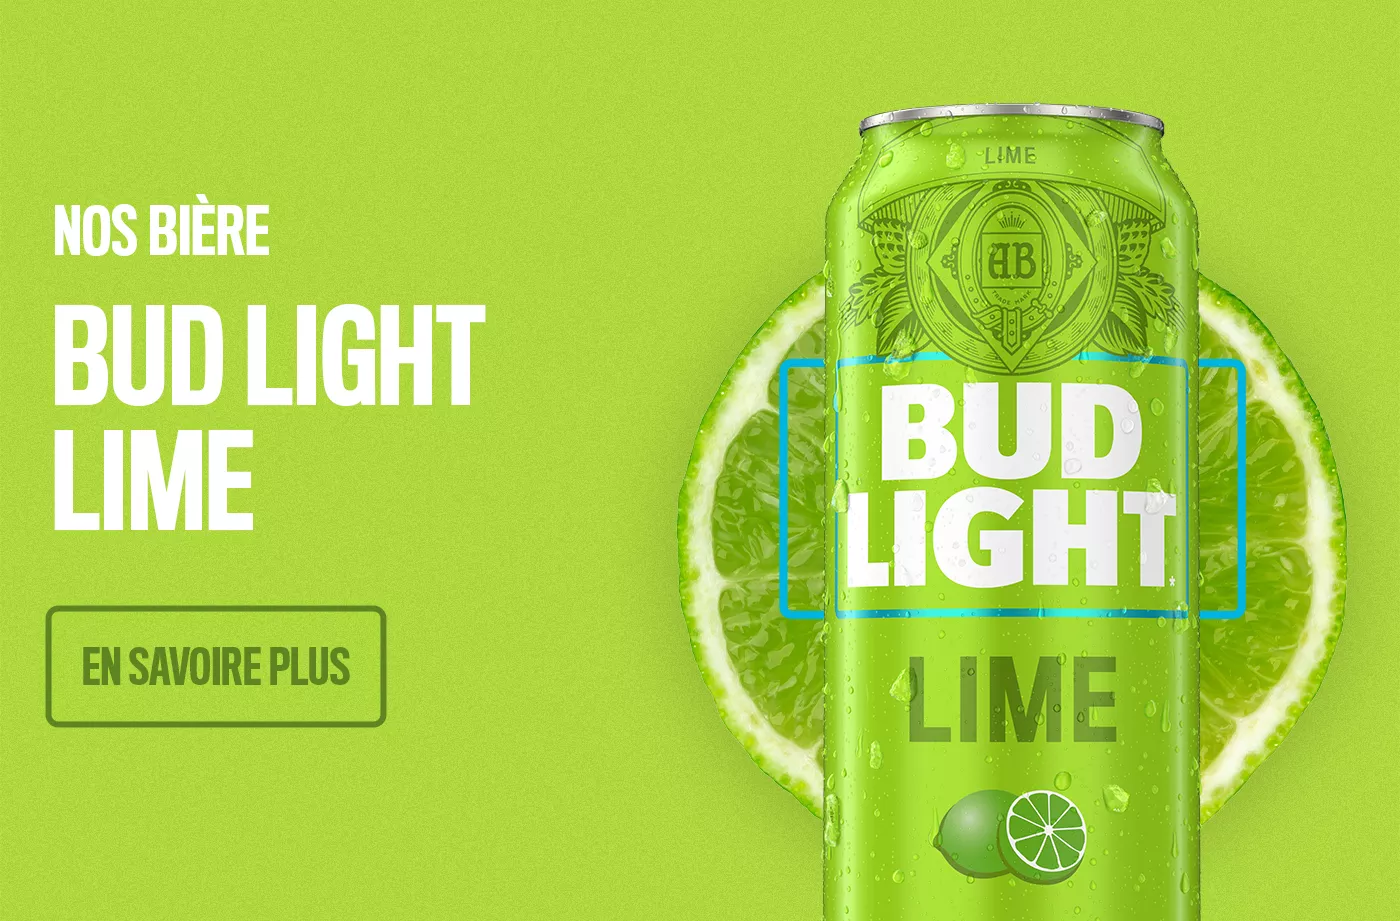 Cliquez pour en savoir plus sur Bud Light Lime